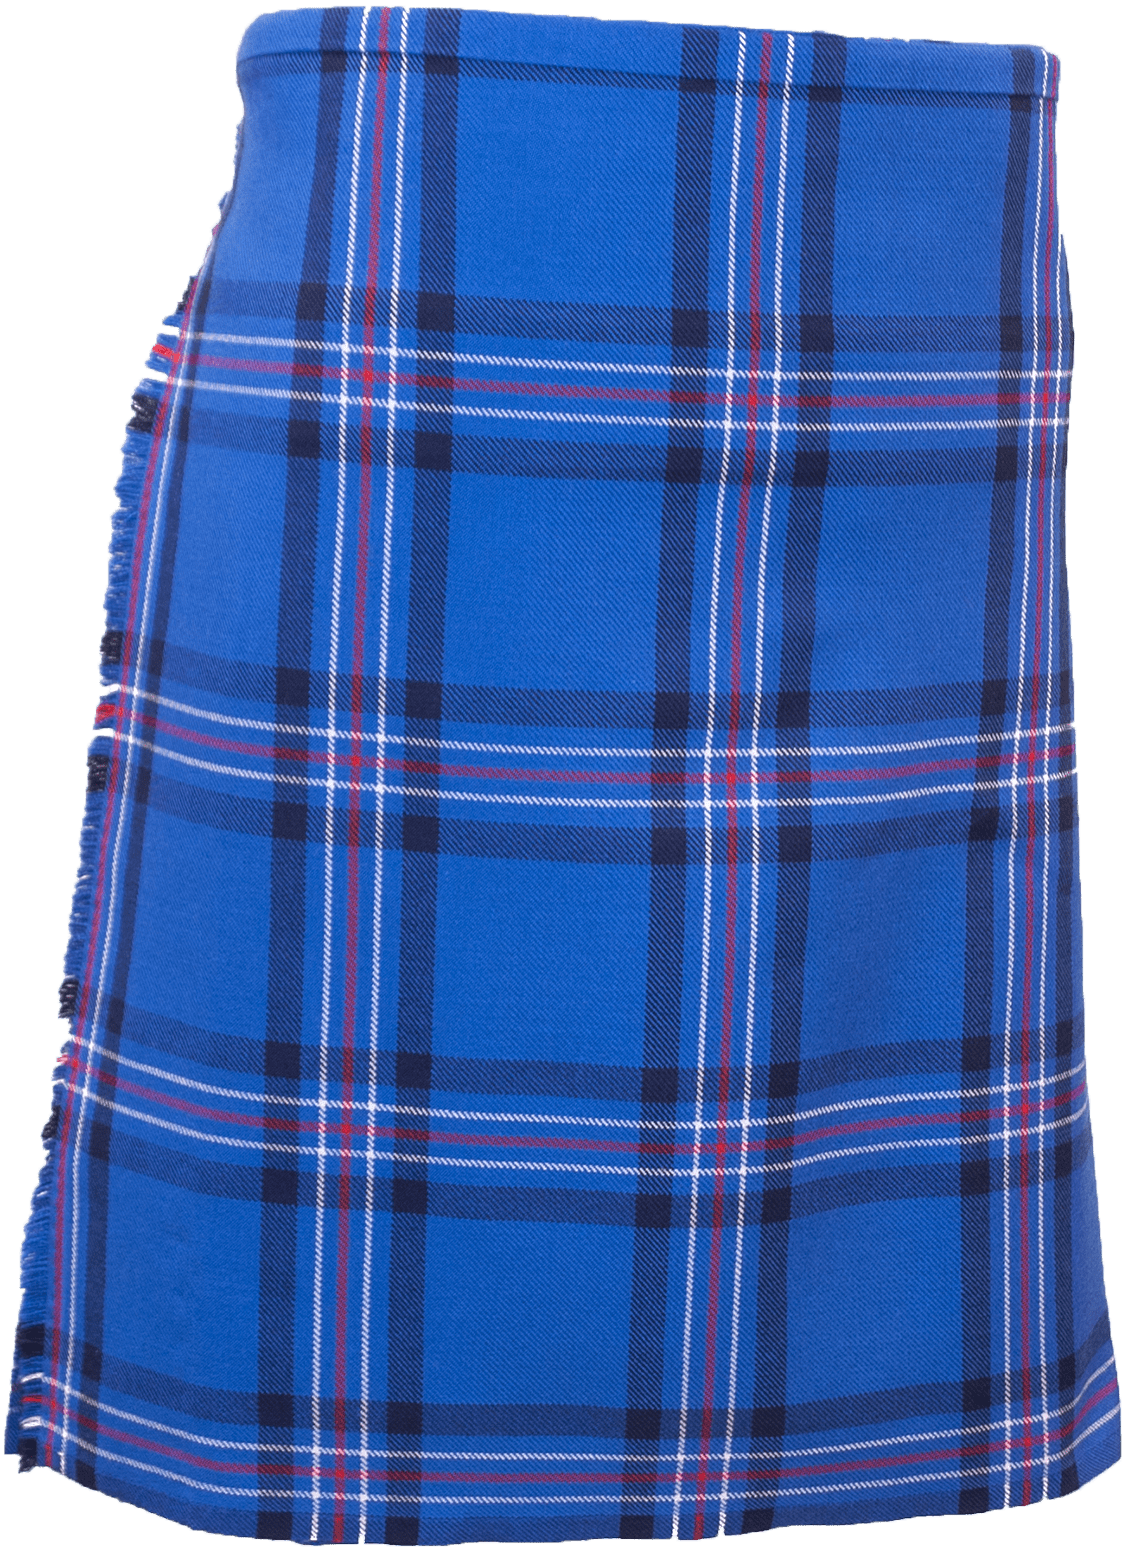 Blue Tartan Kilt Background PNG Image